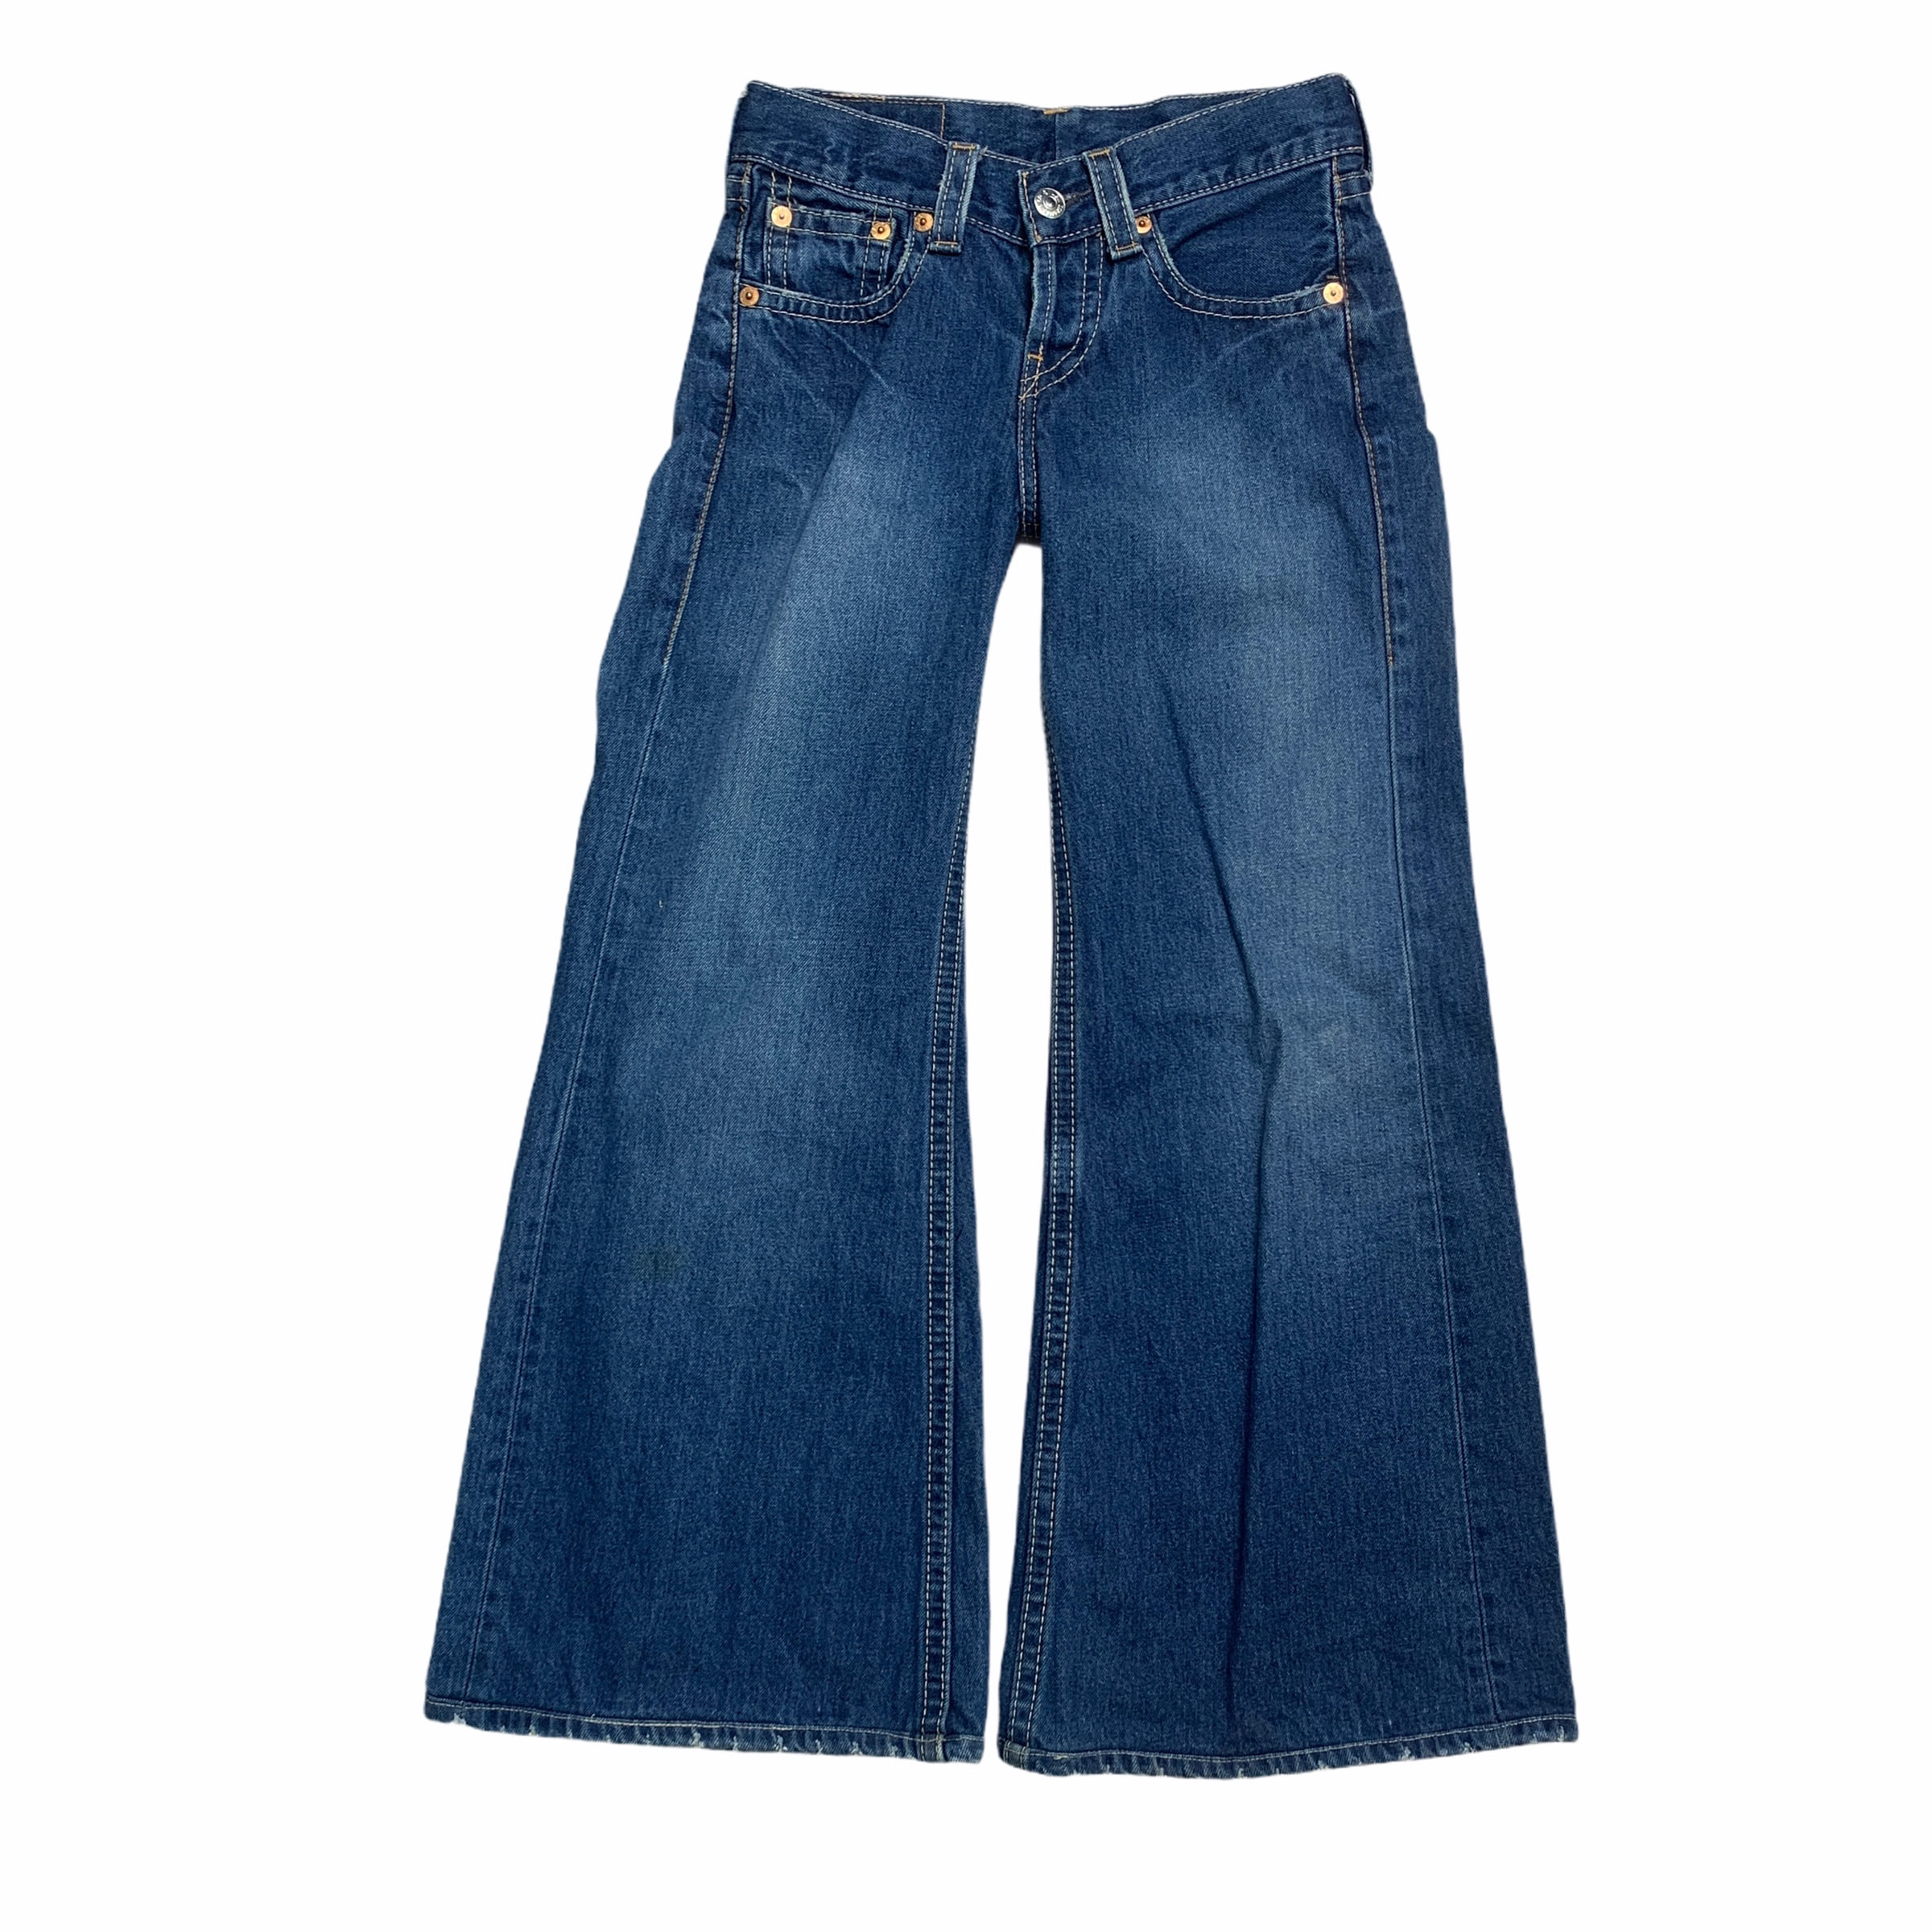 [Levis] (Vintage) 929 Denim pants - Size 27/32